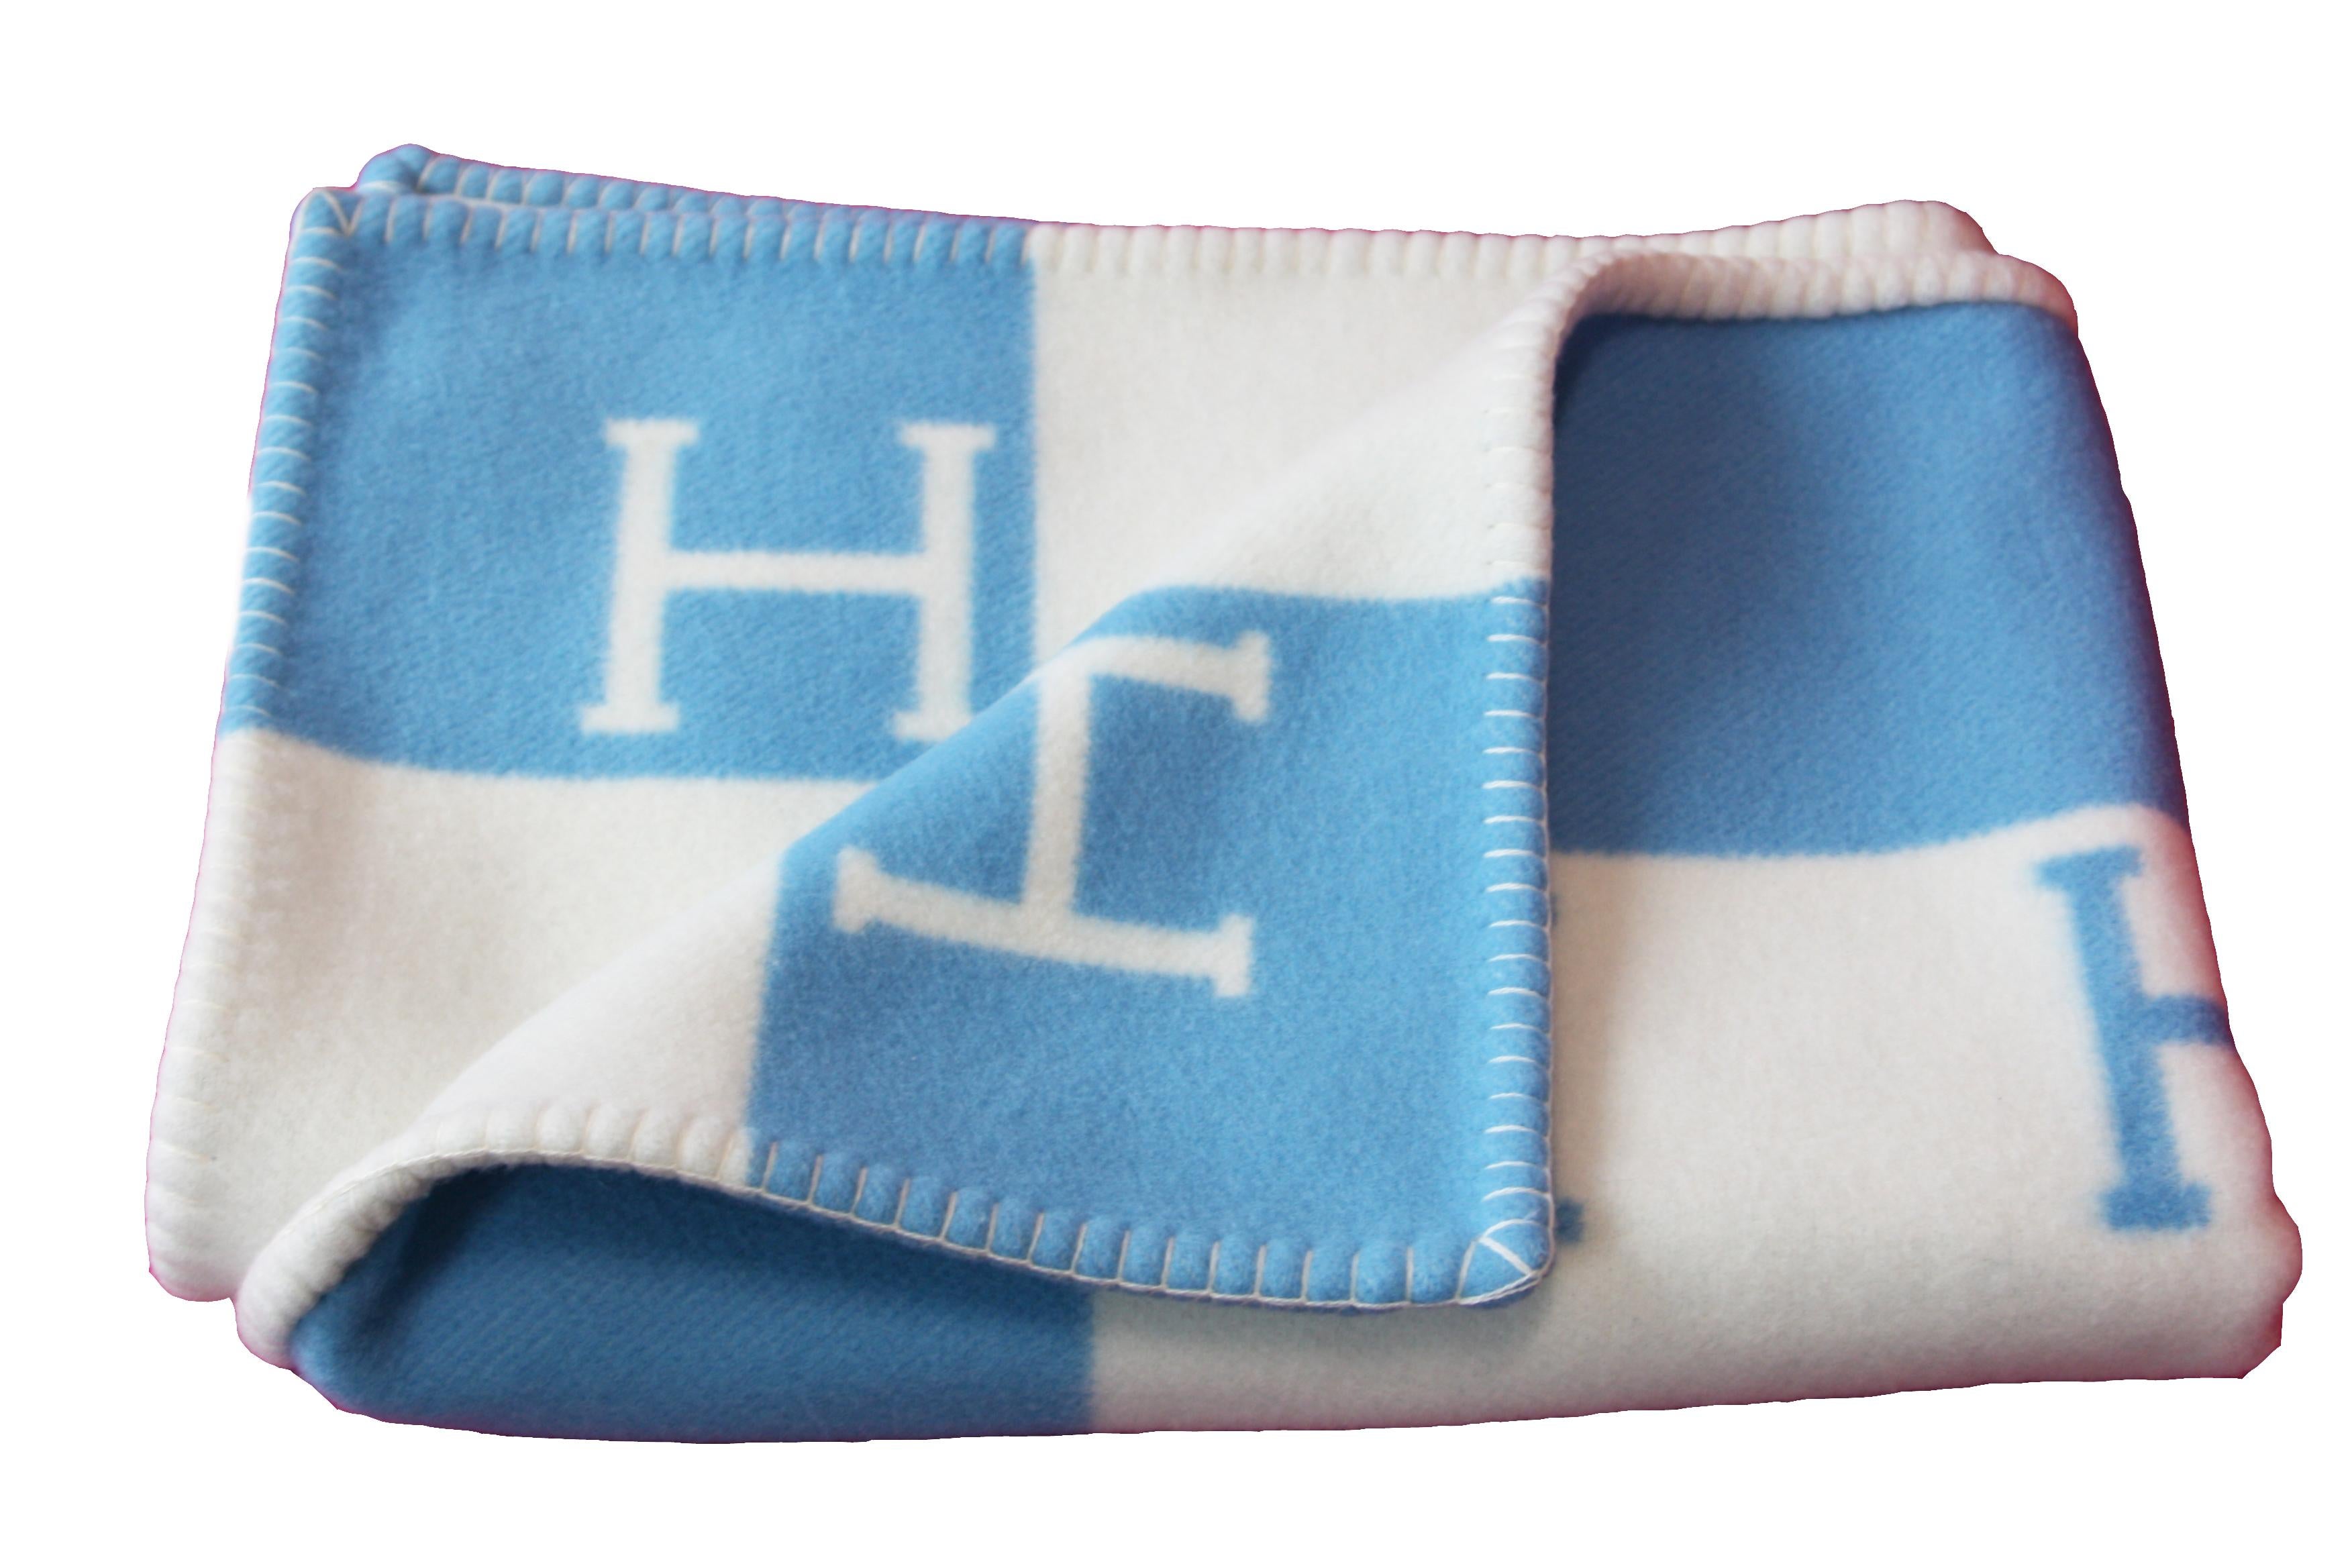 Hermes baby blanket (90% merino wool, 10% cashmere)
Measures 39